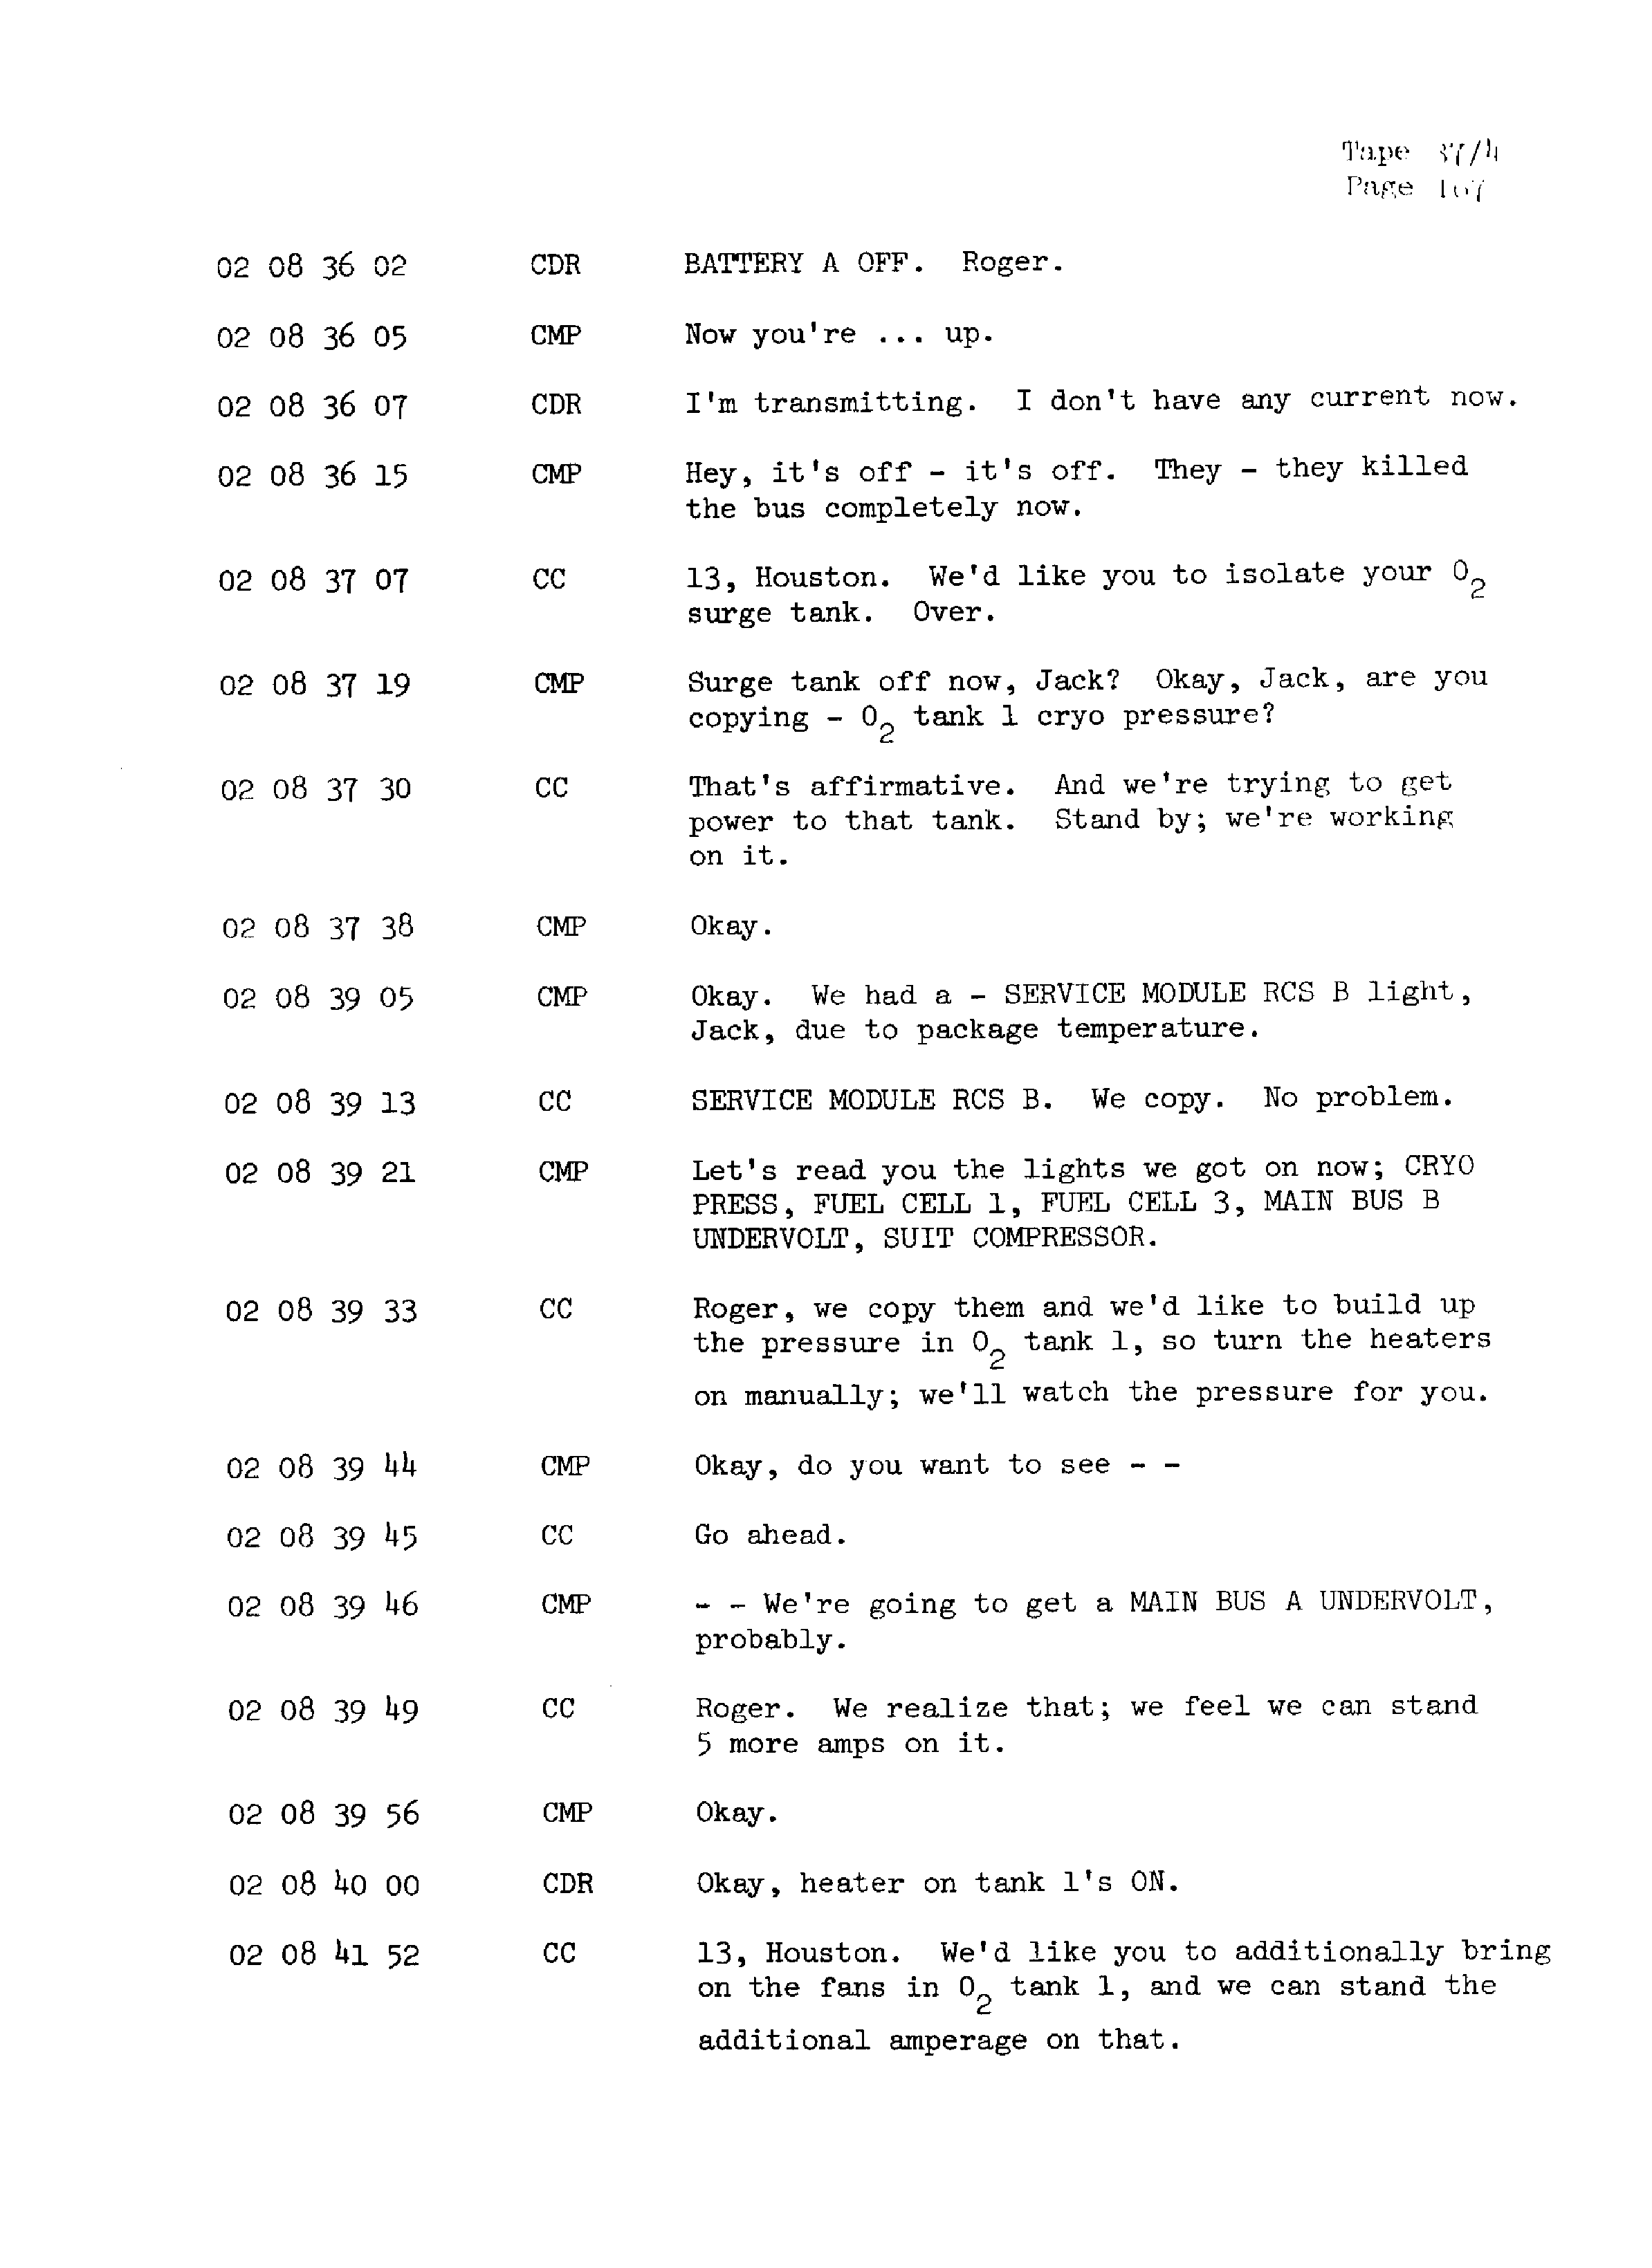 Page 174 of Apollo 13’s original transcript